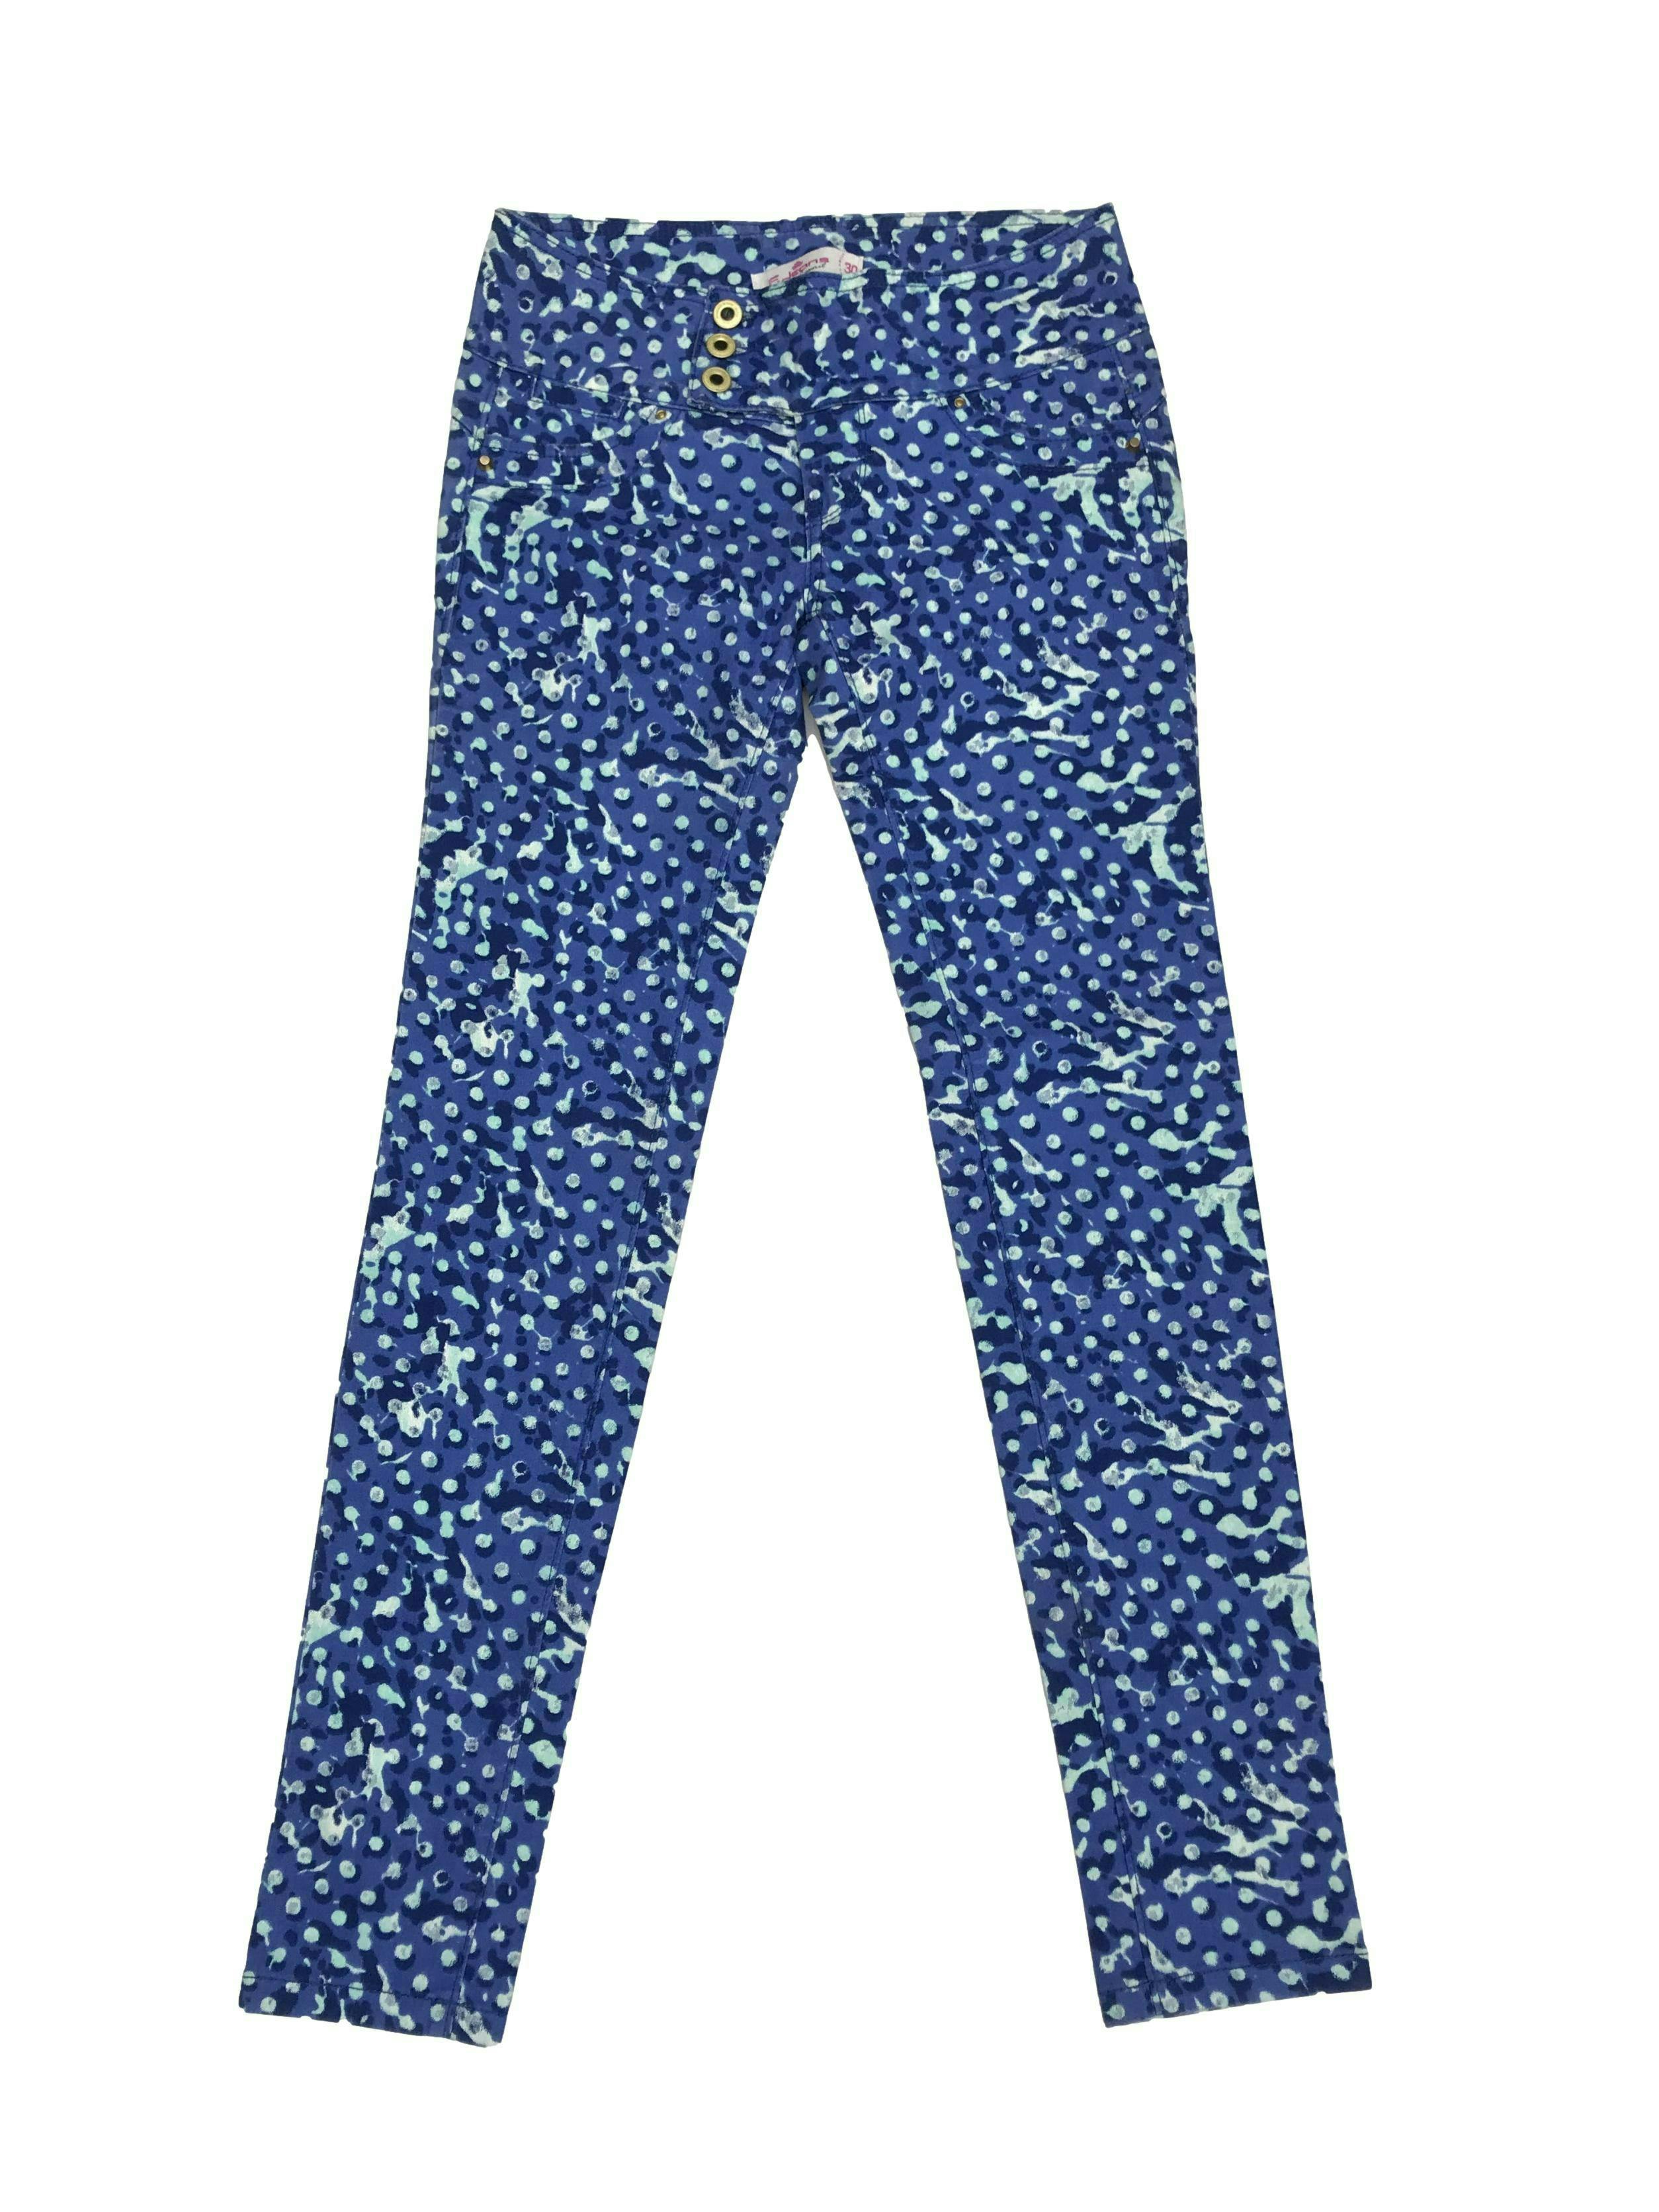 Pantalón jean con estampado en tonos azules y celestes, 98% algodón, tres botones dorados, bolsillos falsos delanteros y posteriores, tiro medio, corte pitillo. Cintura 66cm Largo 94cm